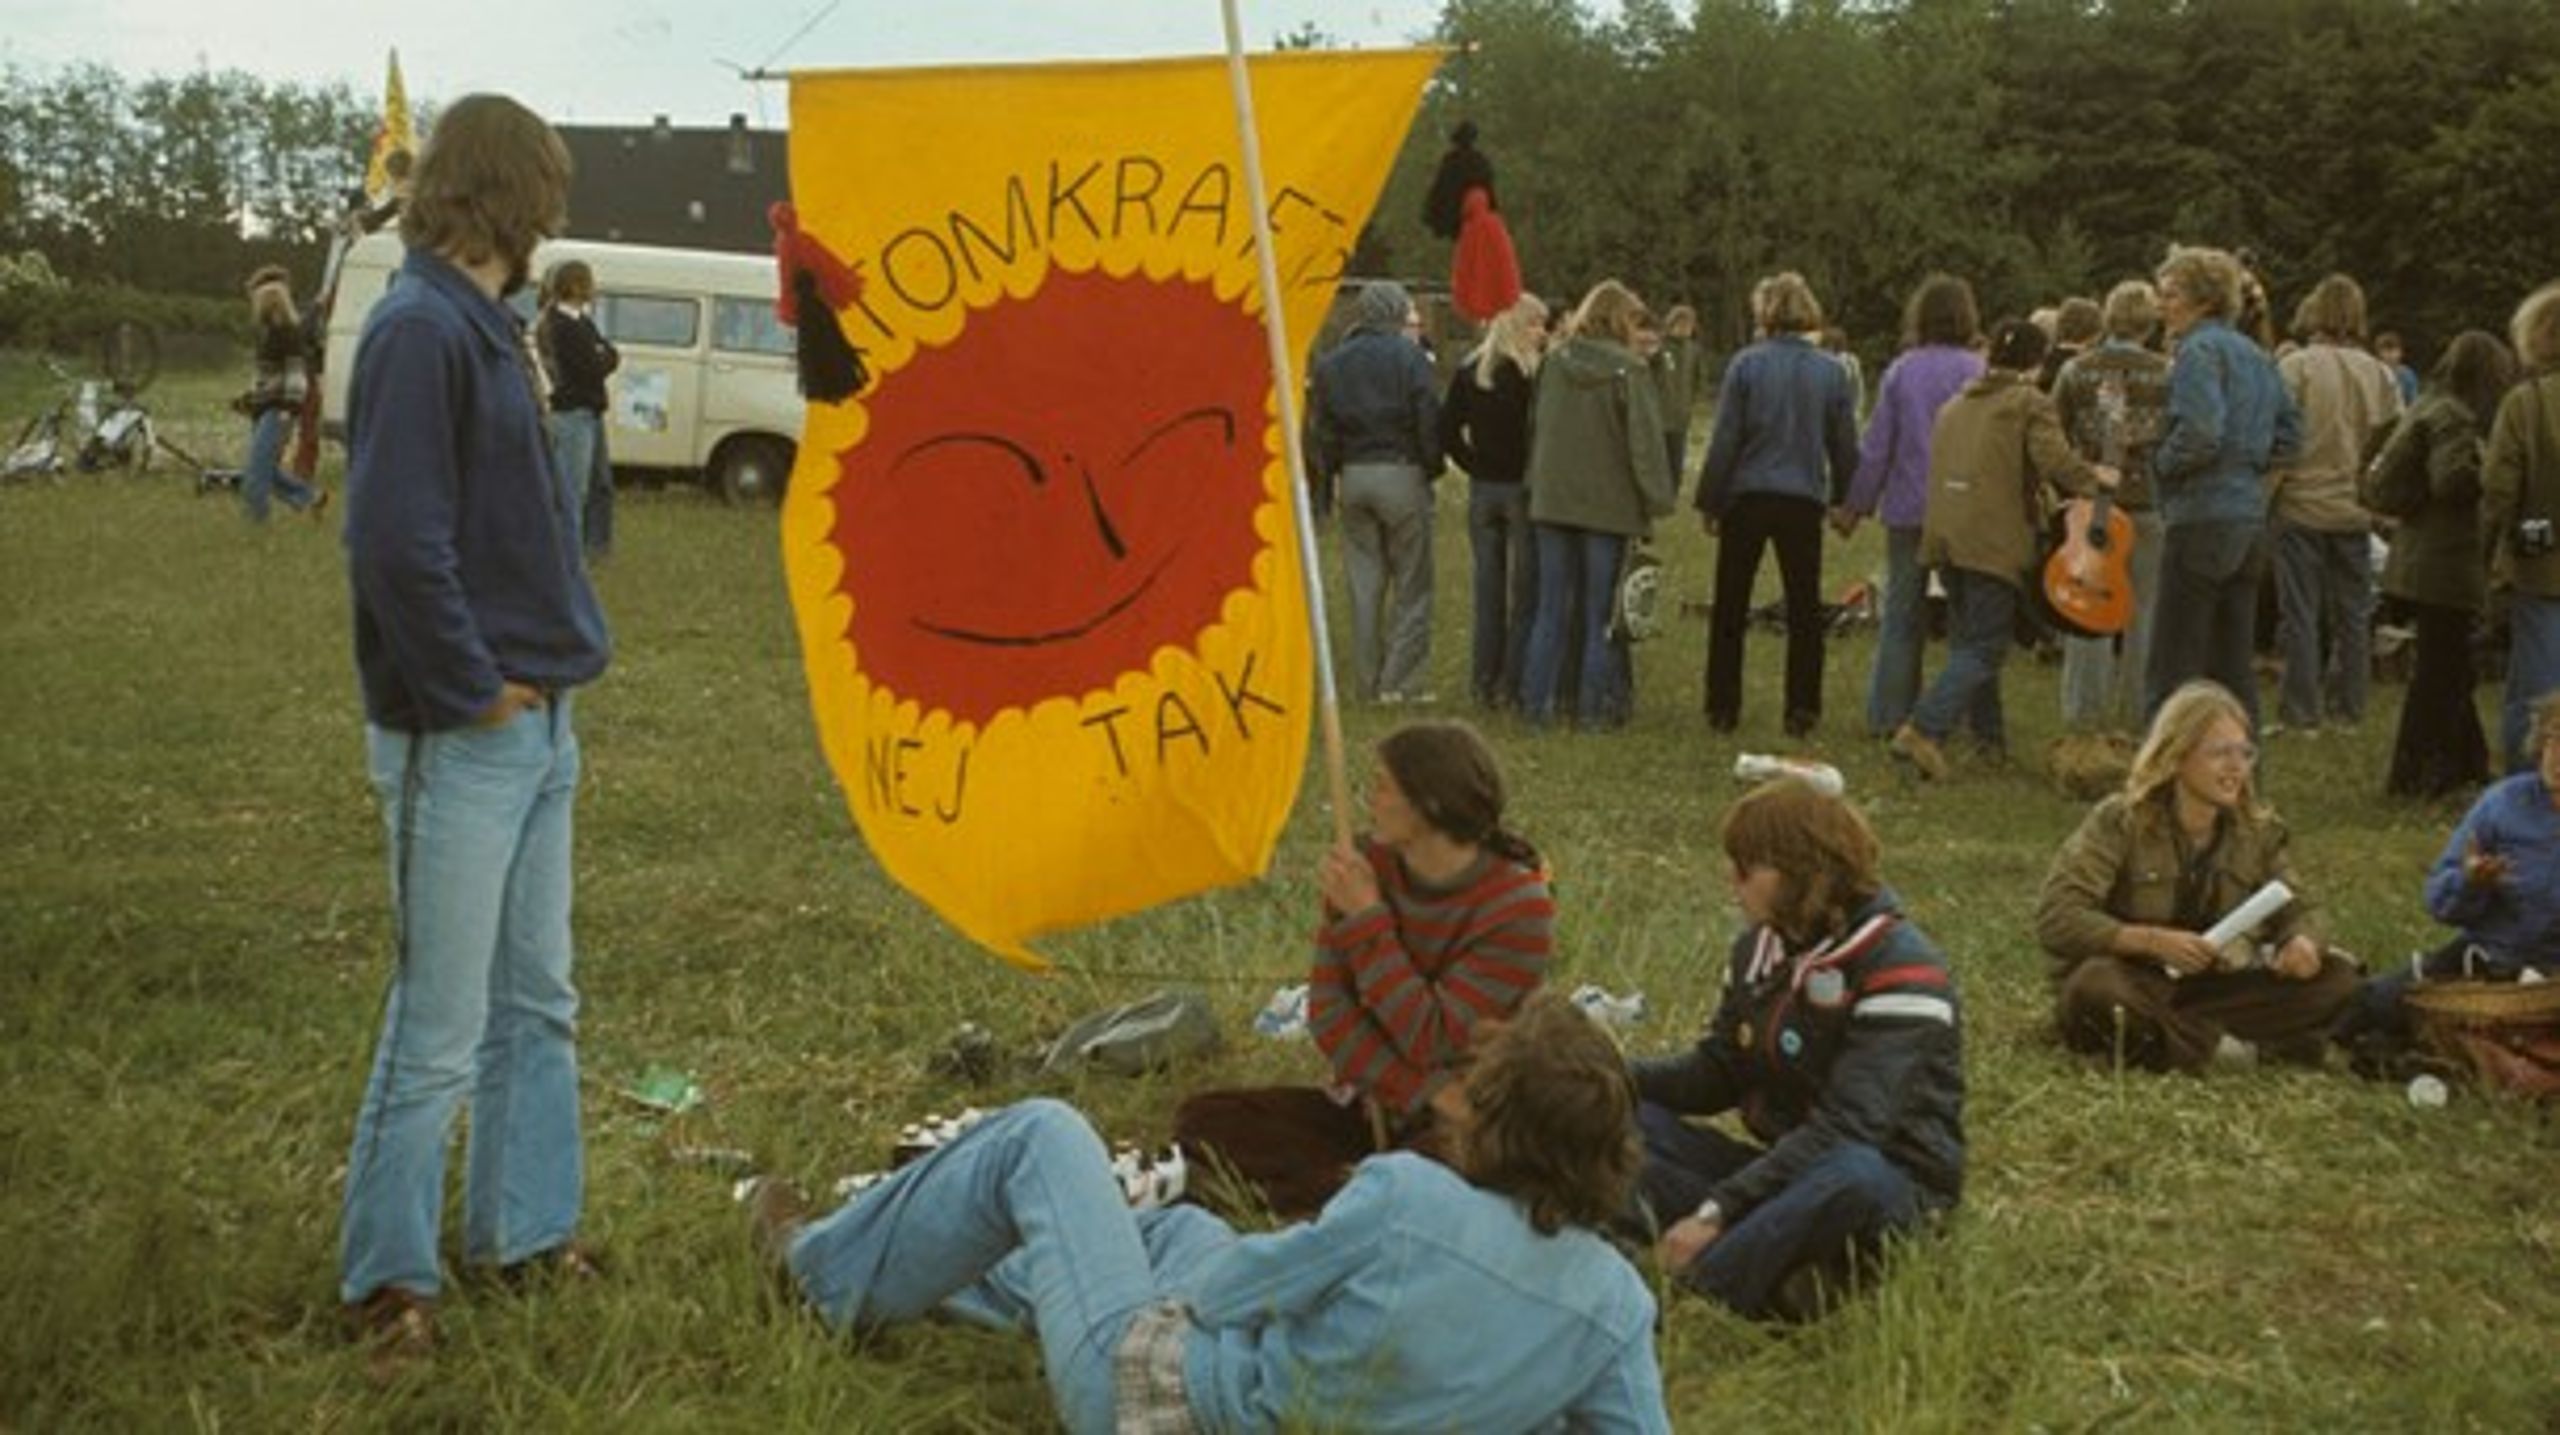 I Danmark har atomkraft været et af de største tabuer i dansk politik siden venstrefløjen i 70'erne gik på gaden under parolen "Atomkraft - nej tak".